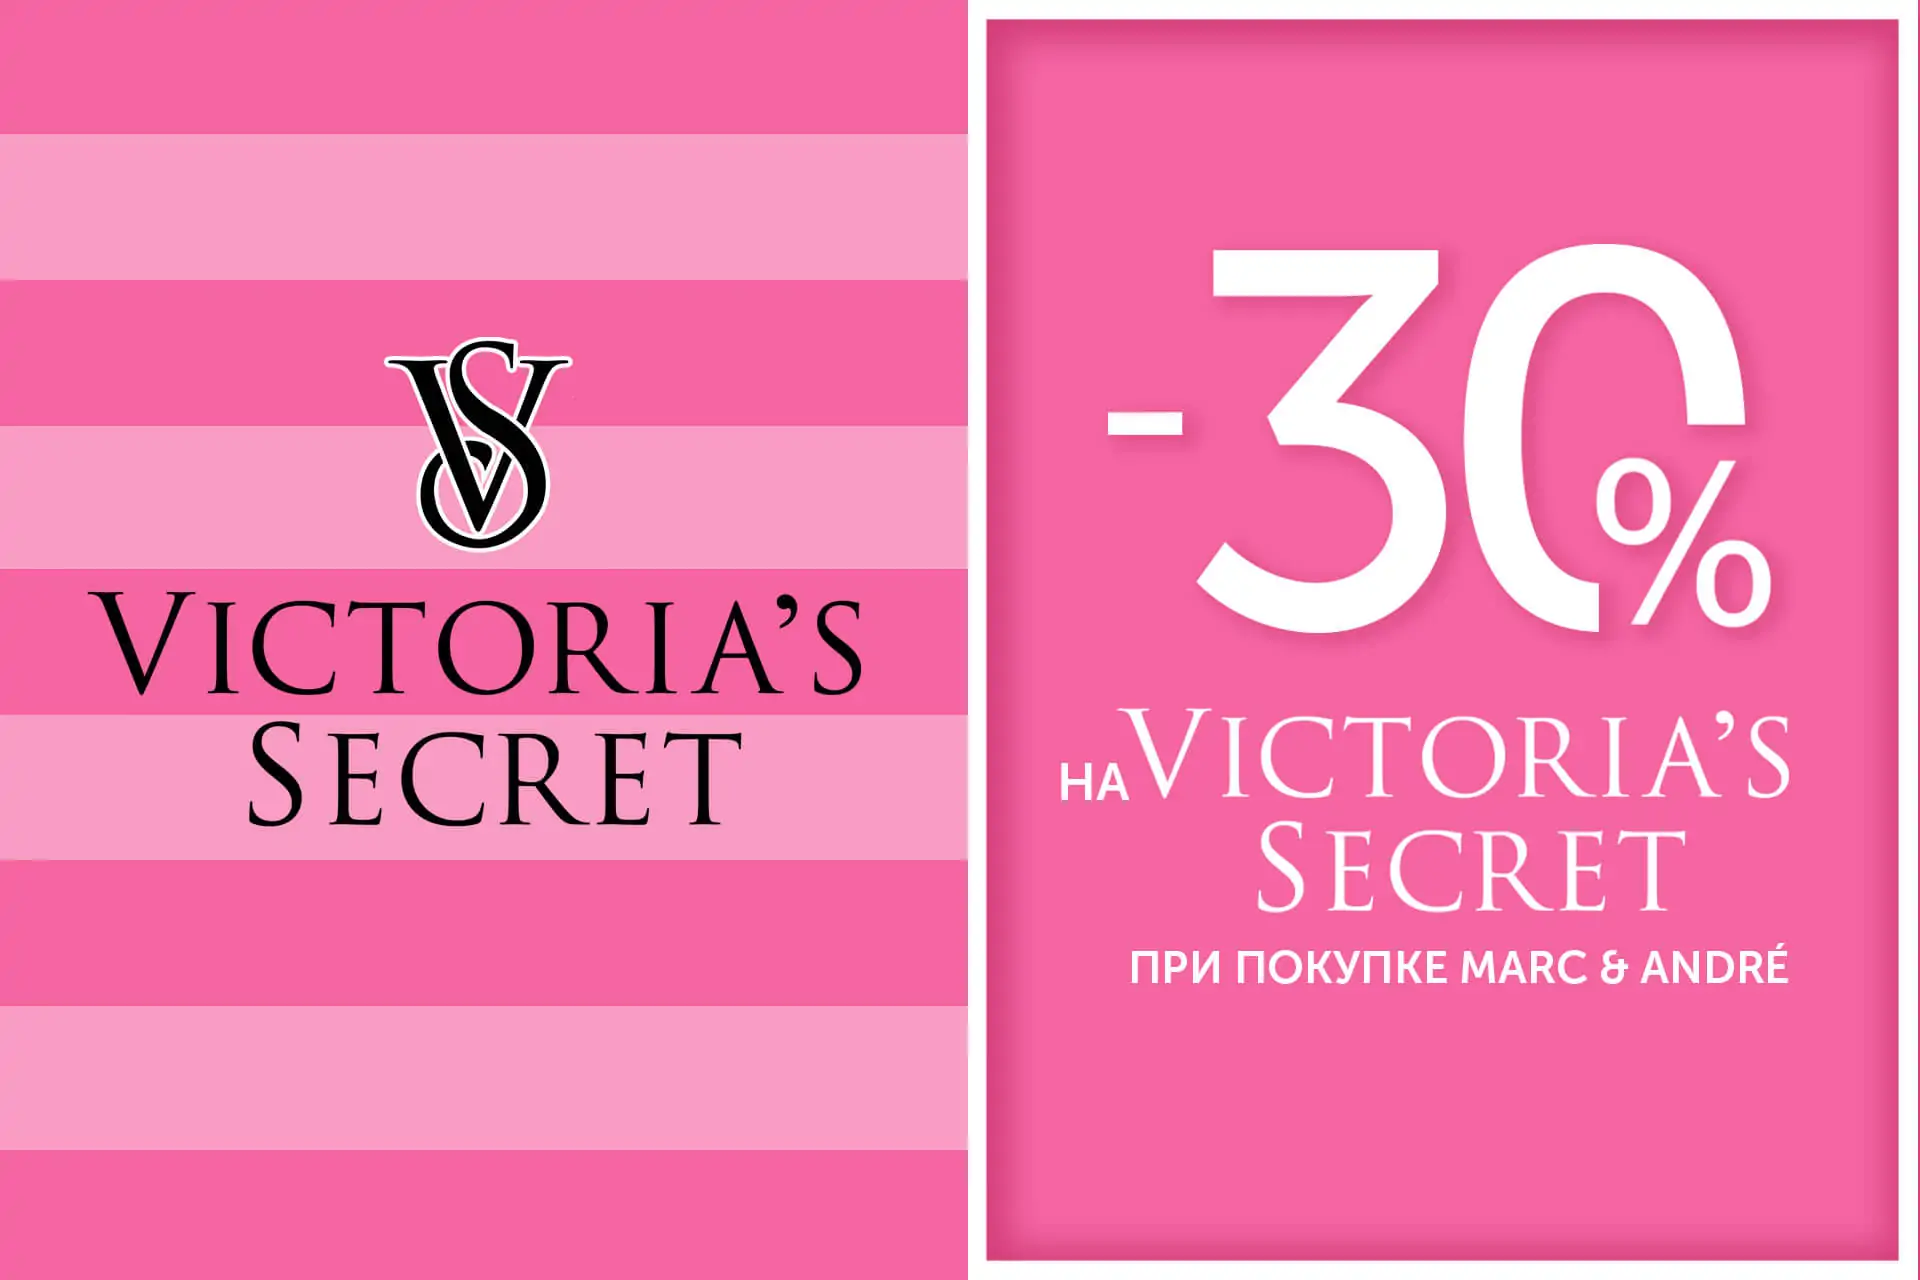 Marc & André + Victoria's Secret = красота и комфорт ещё выгоднее вместе!